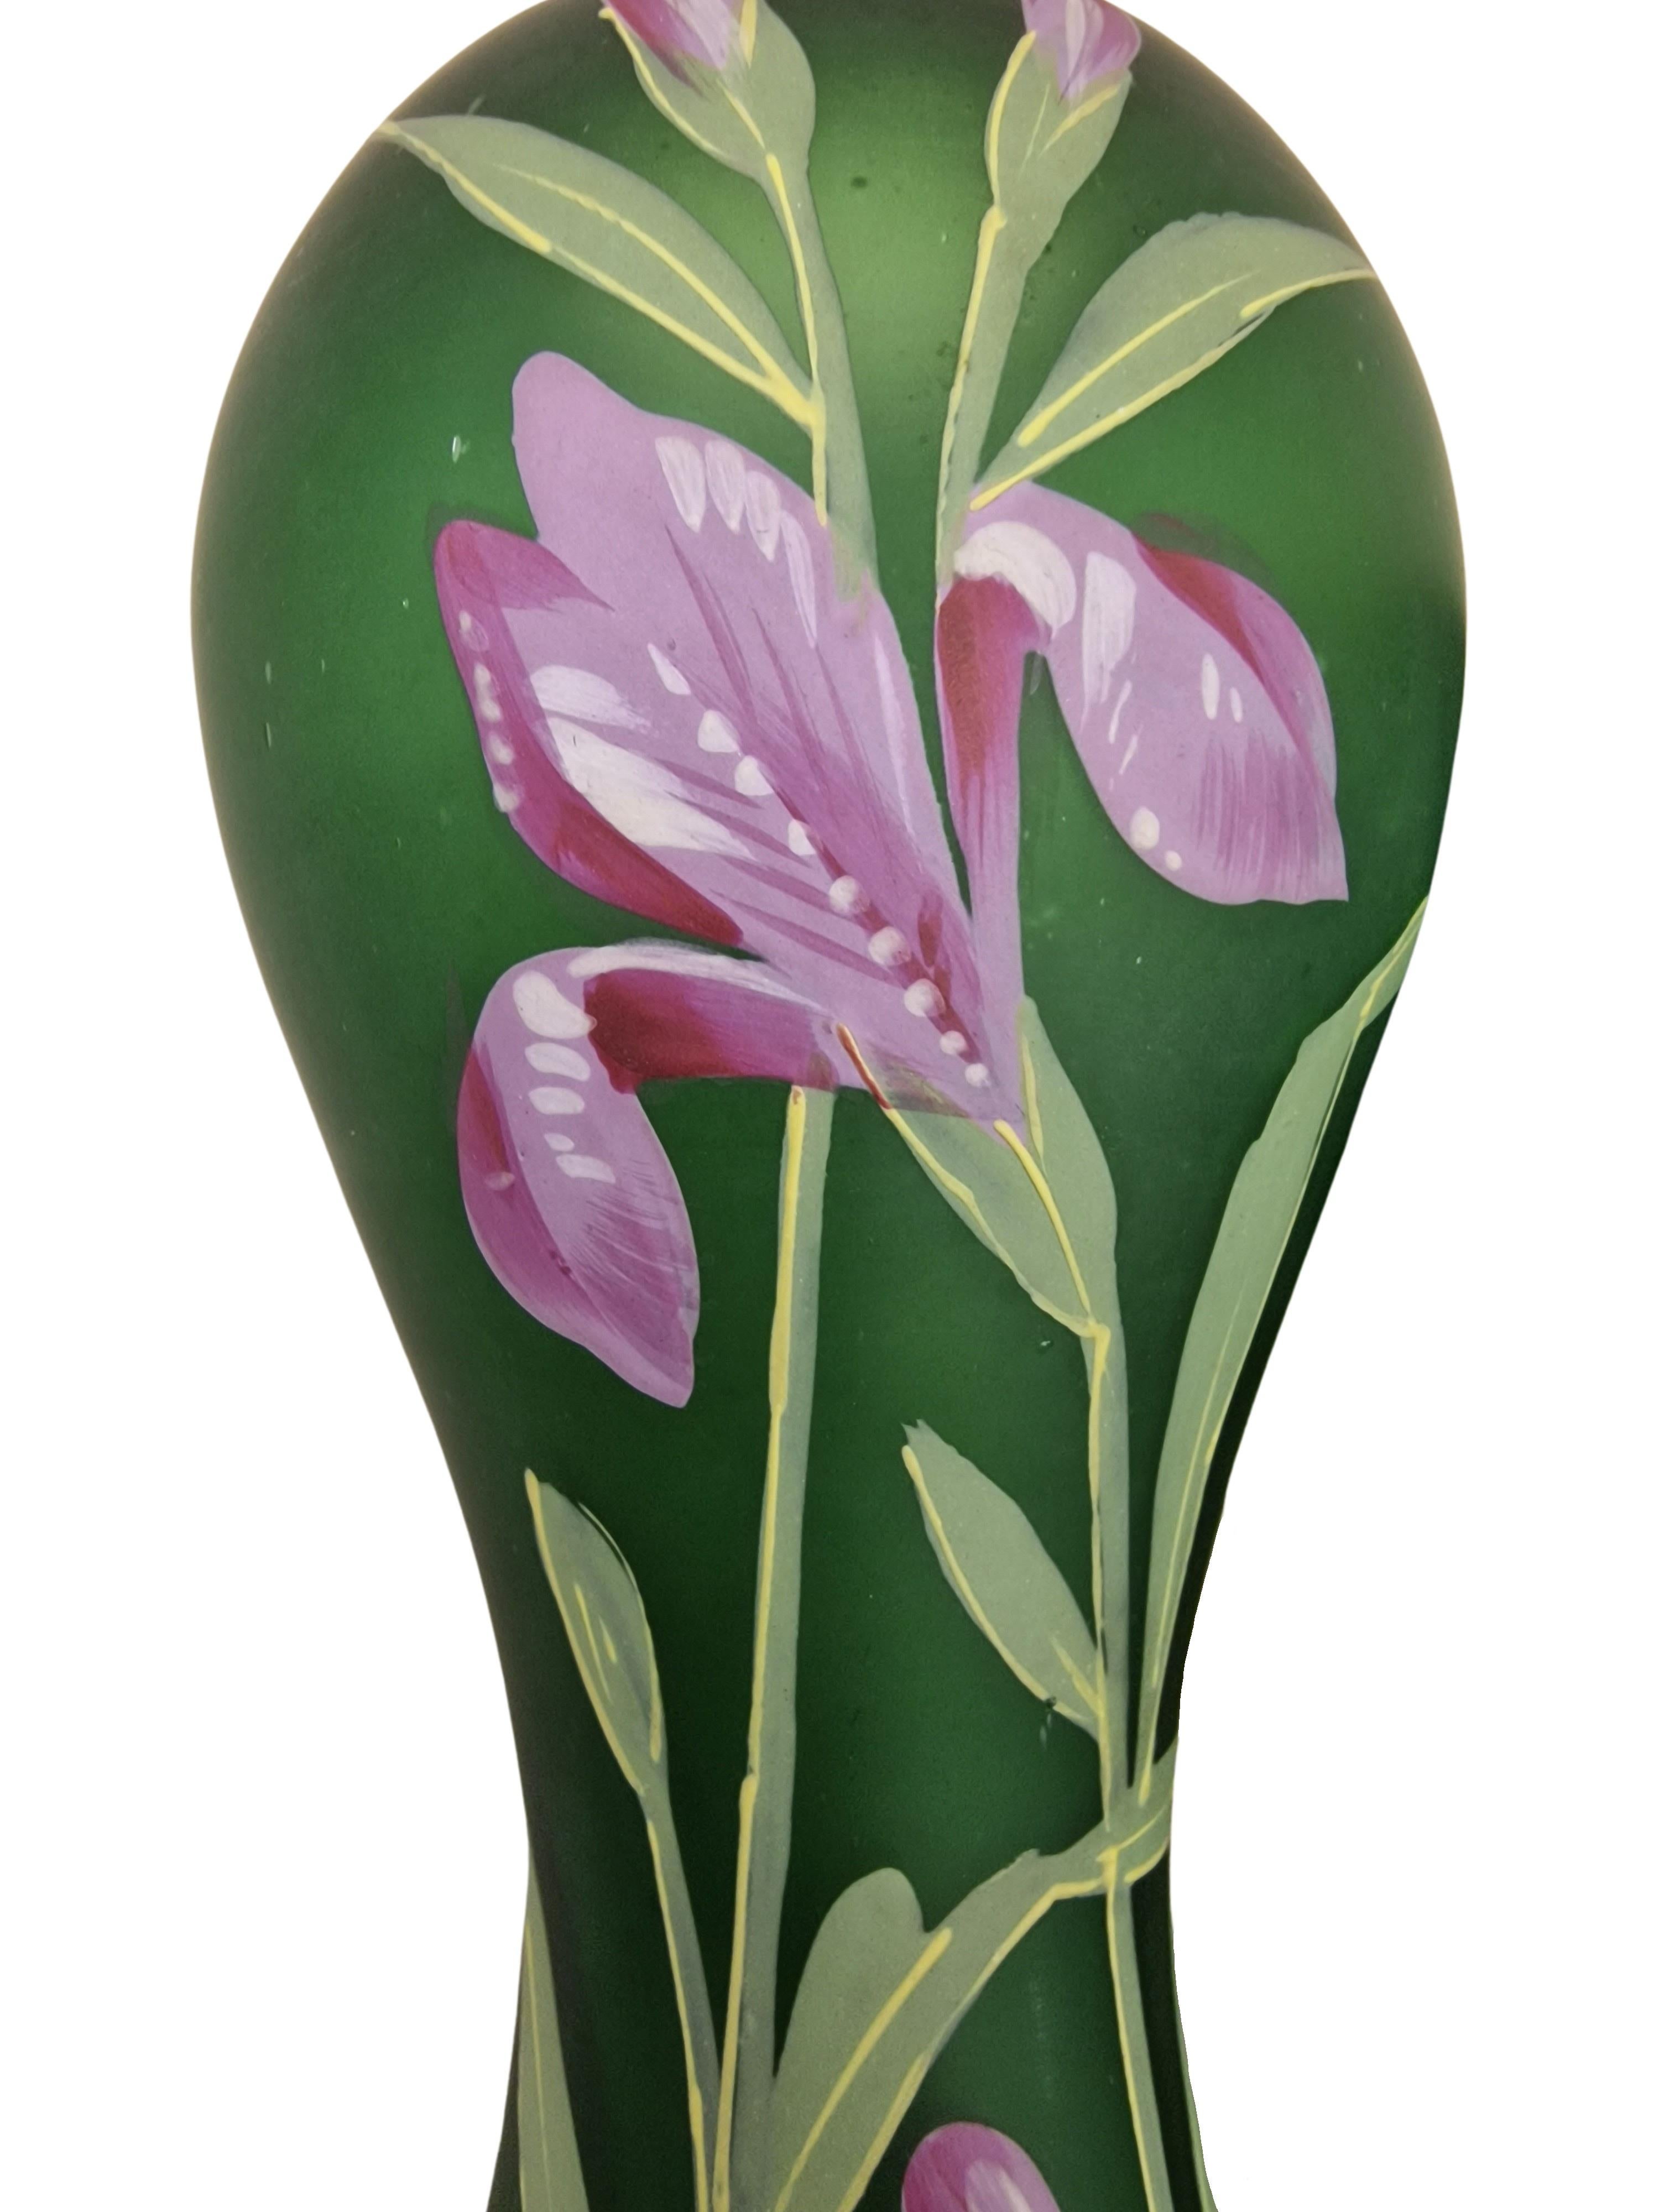 Glass Pair of Flower Vases, Hand Painted, Art Nouveau/Jugendstil, Legras, 1910, France